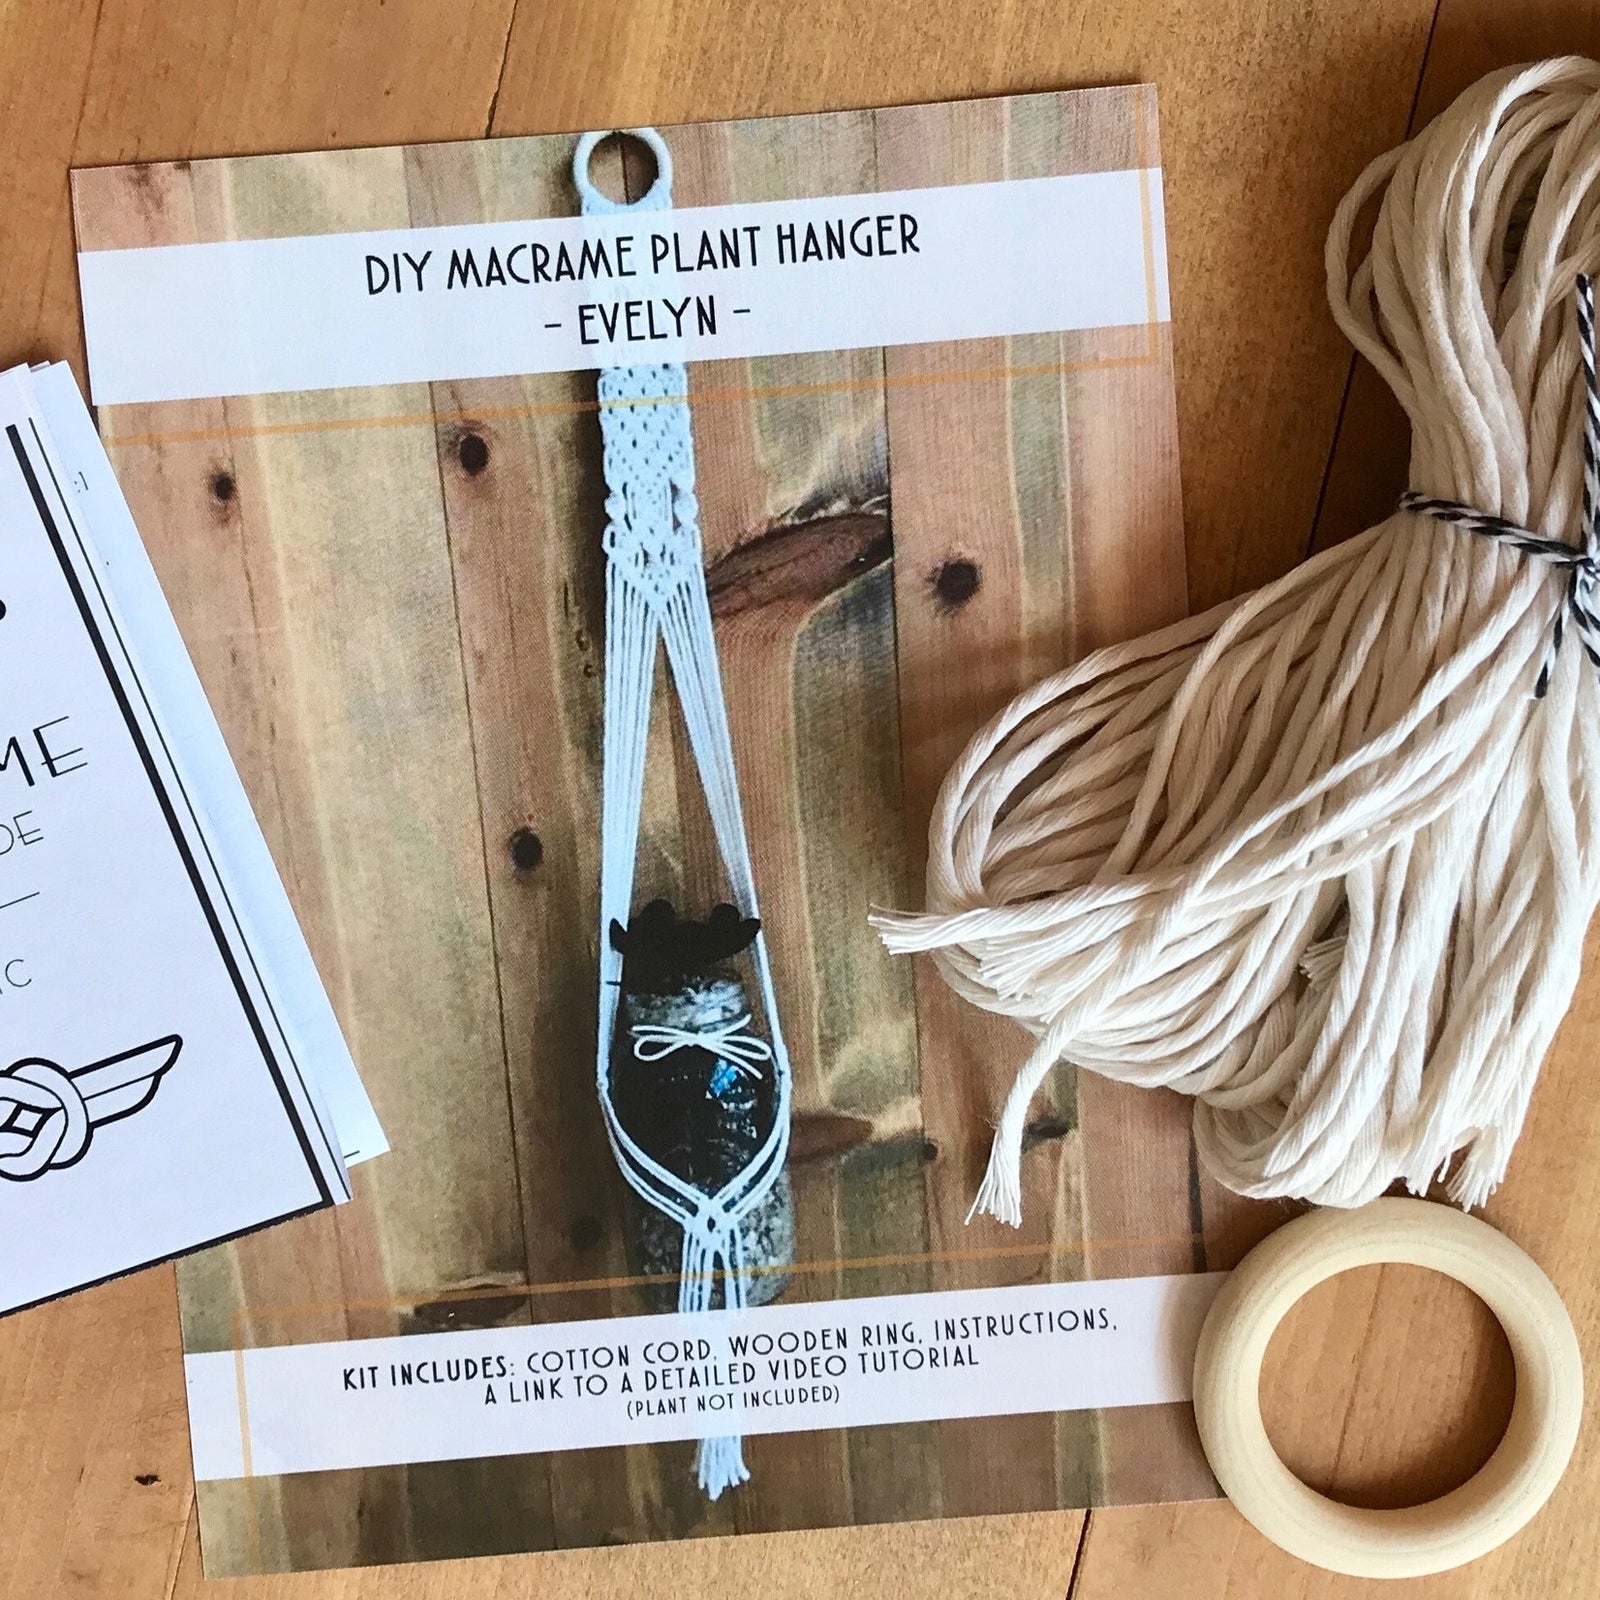 DIY Macrame Plant Hanger Kit- The Evelyn